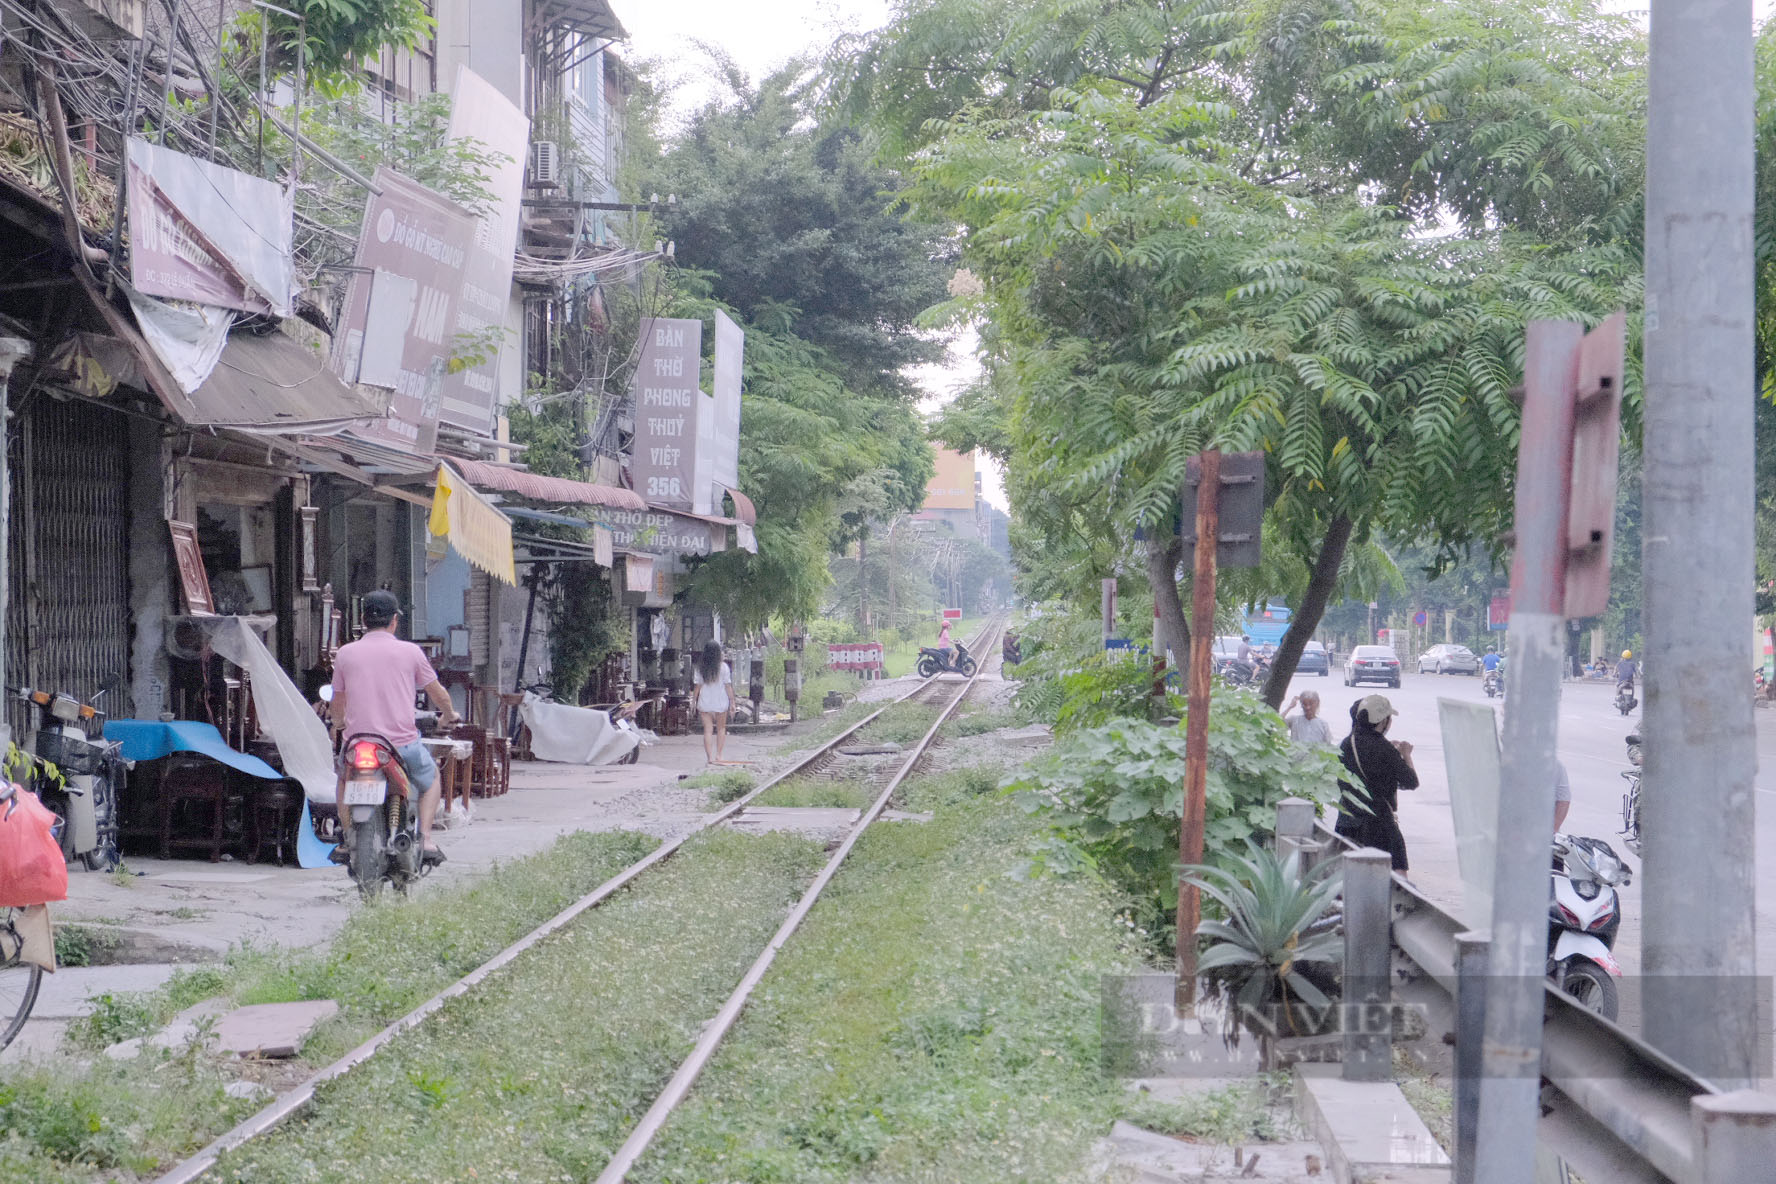 Hà Nội: Nguy hiểm rình rập từ đường dân sinh tự phát cắt ngang đường sắt - Ảnh 1.